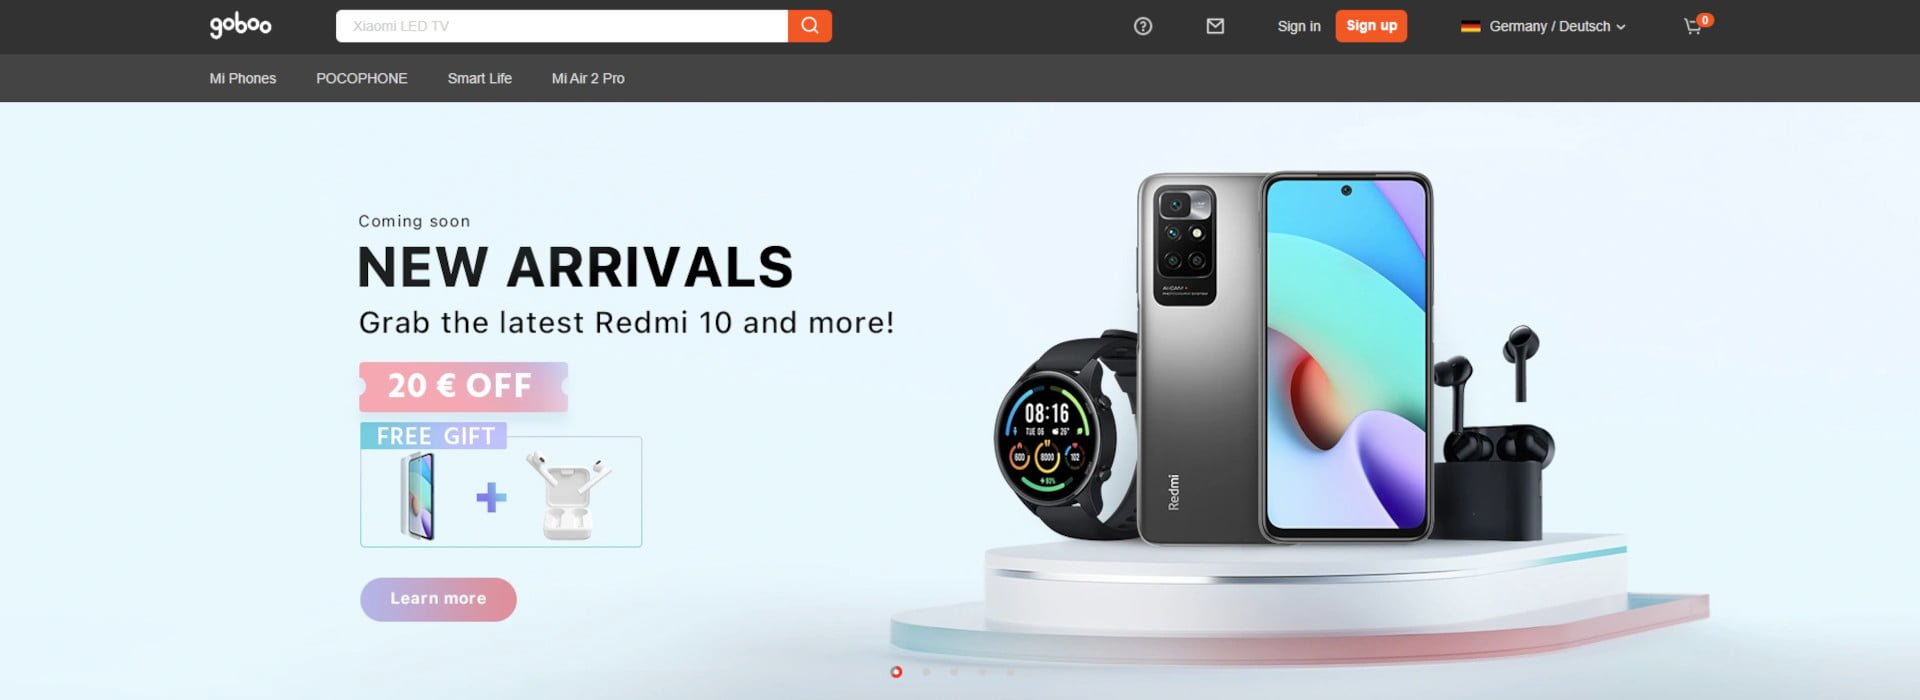 Goboo Xiaomi winkel online couponlijst